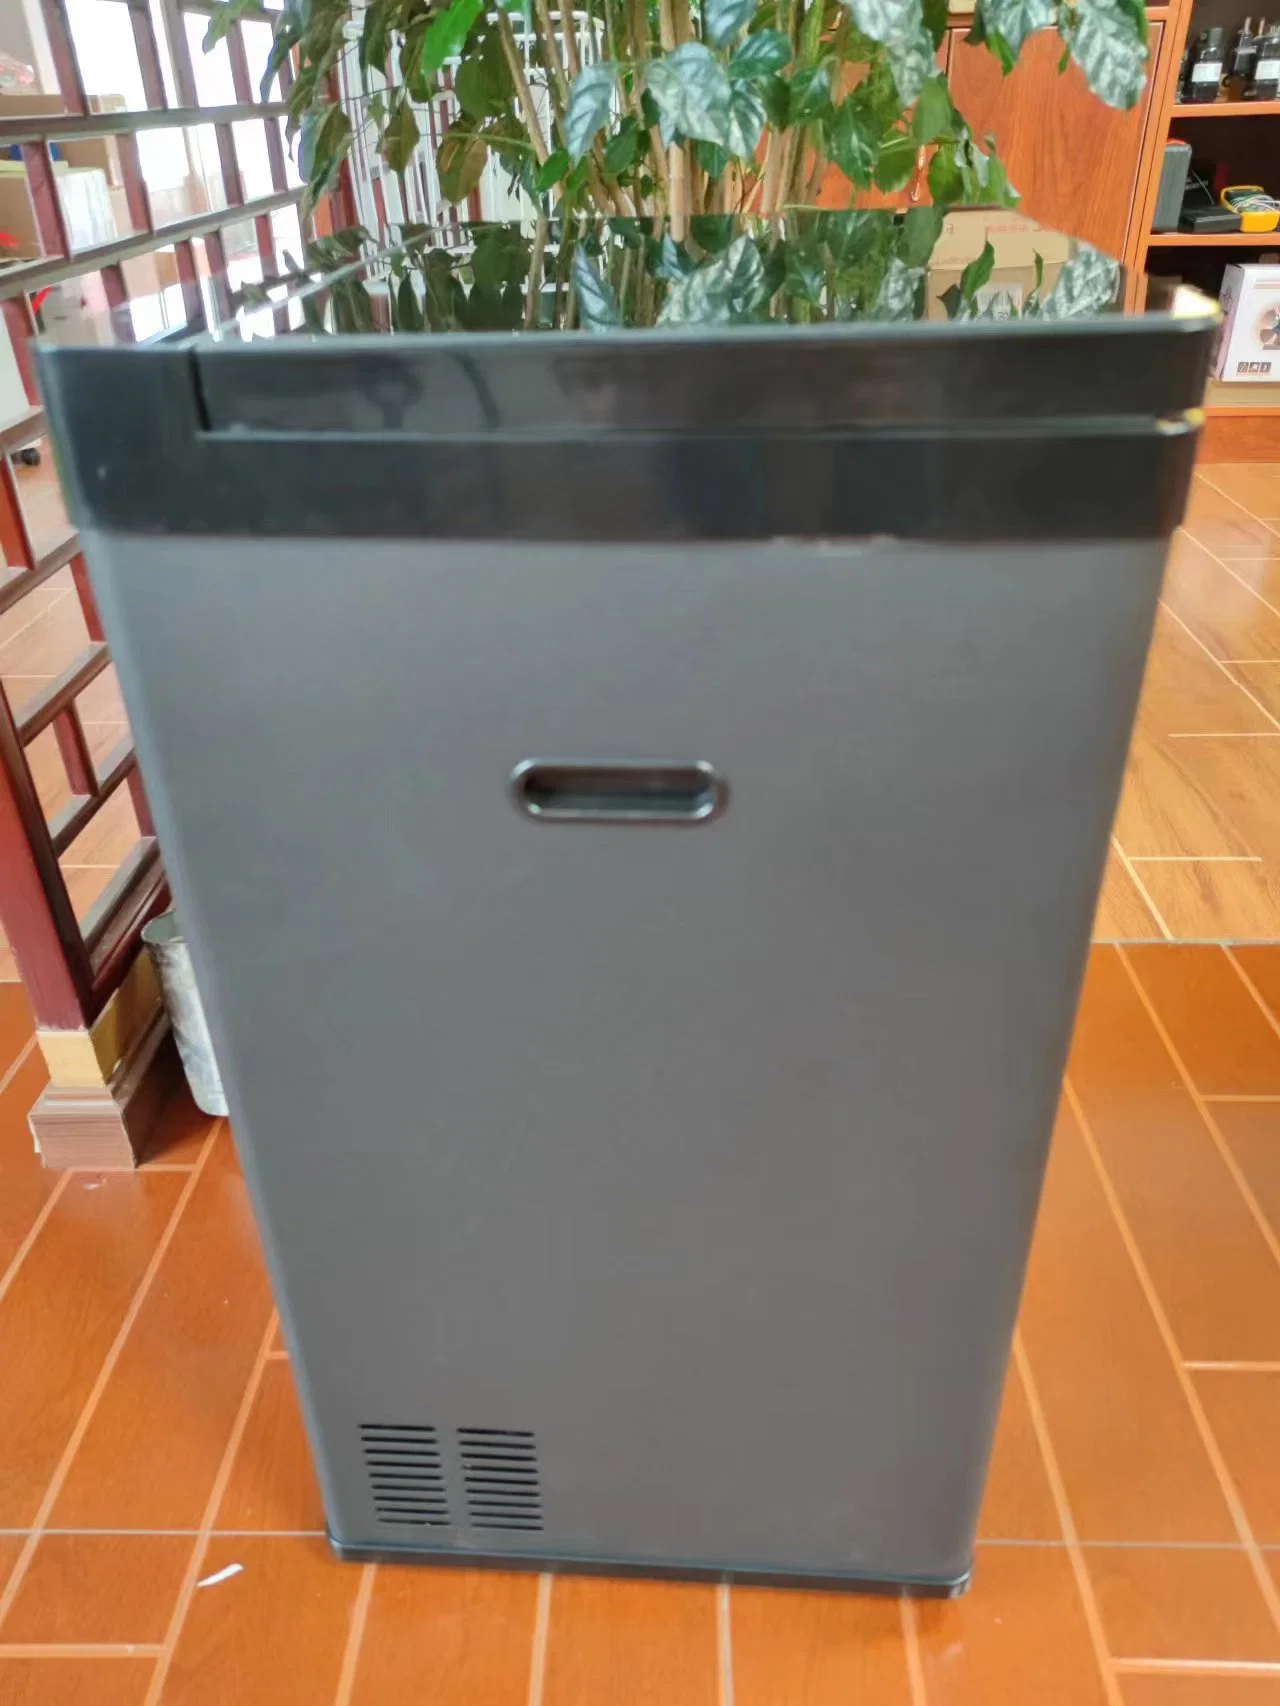 Neues Design 12V Kühlschrank Gefrierschrank Startseite Abfall Müll Müll Müll Müll Can-Container